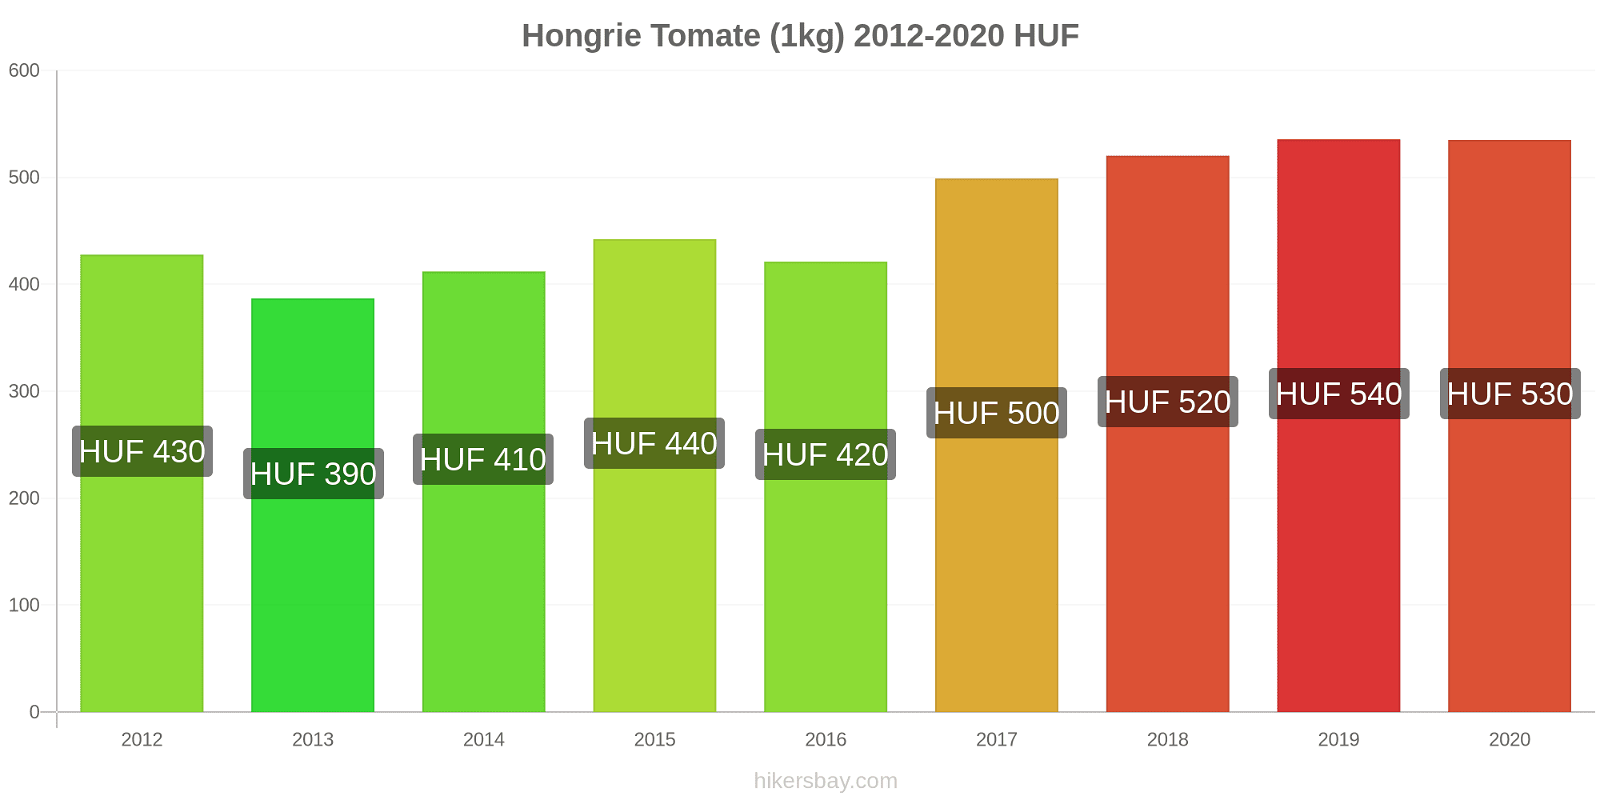 Hongrie changements de prix Tomate (1kg) hikersbay.com